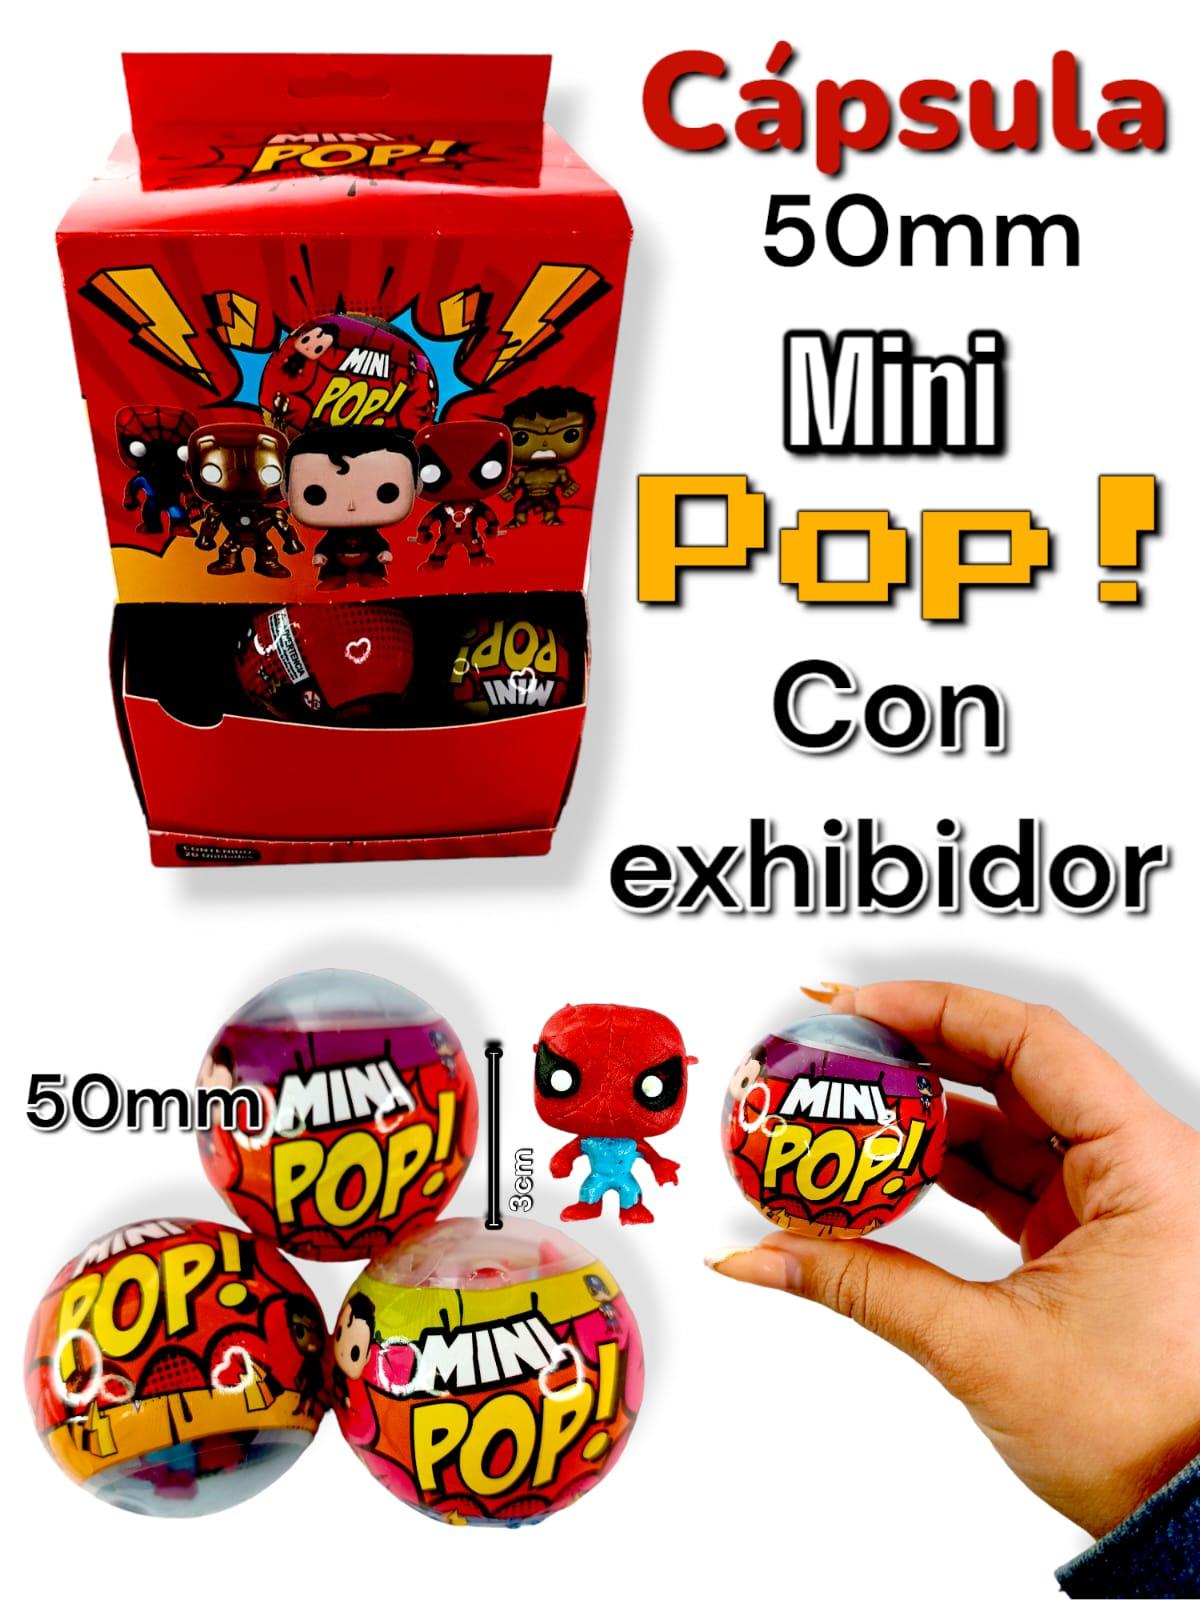 Capsula Mini pop Super 50mm con exhibidor